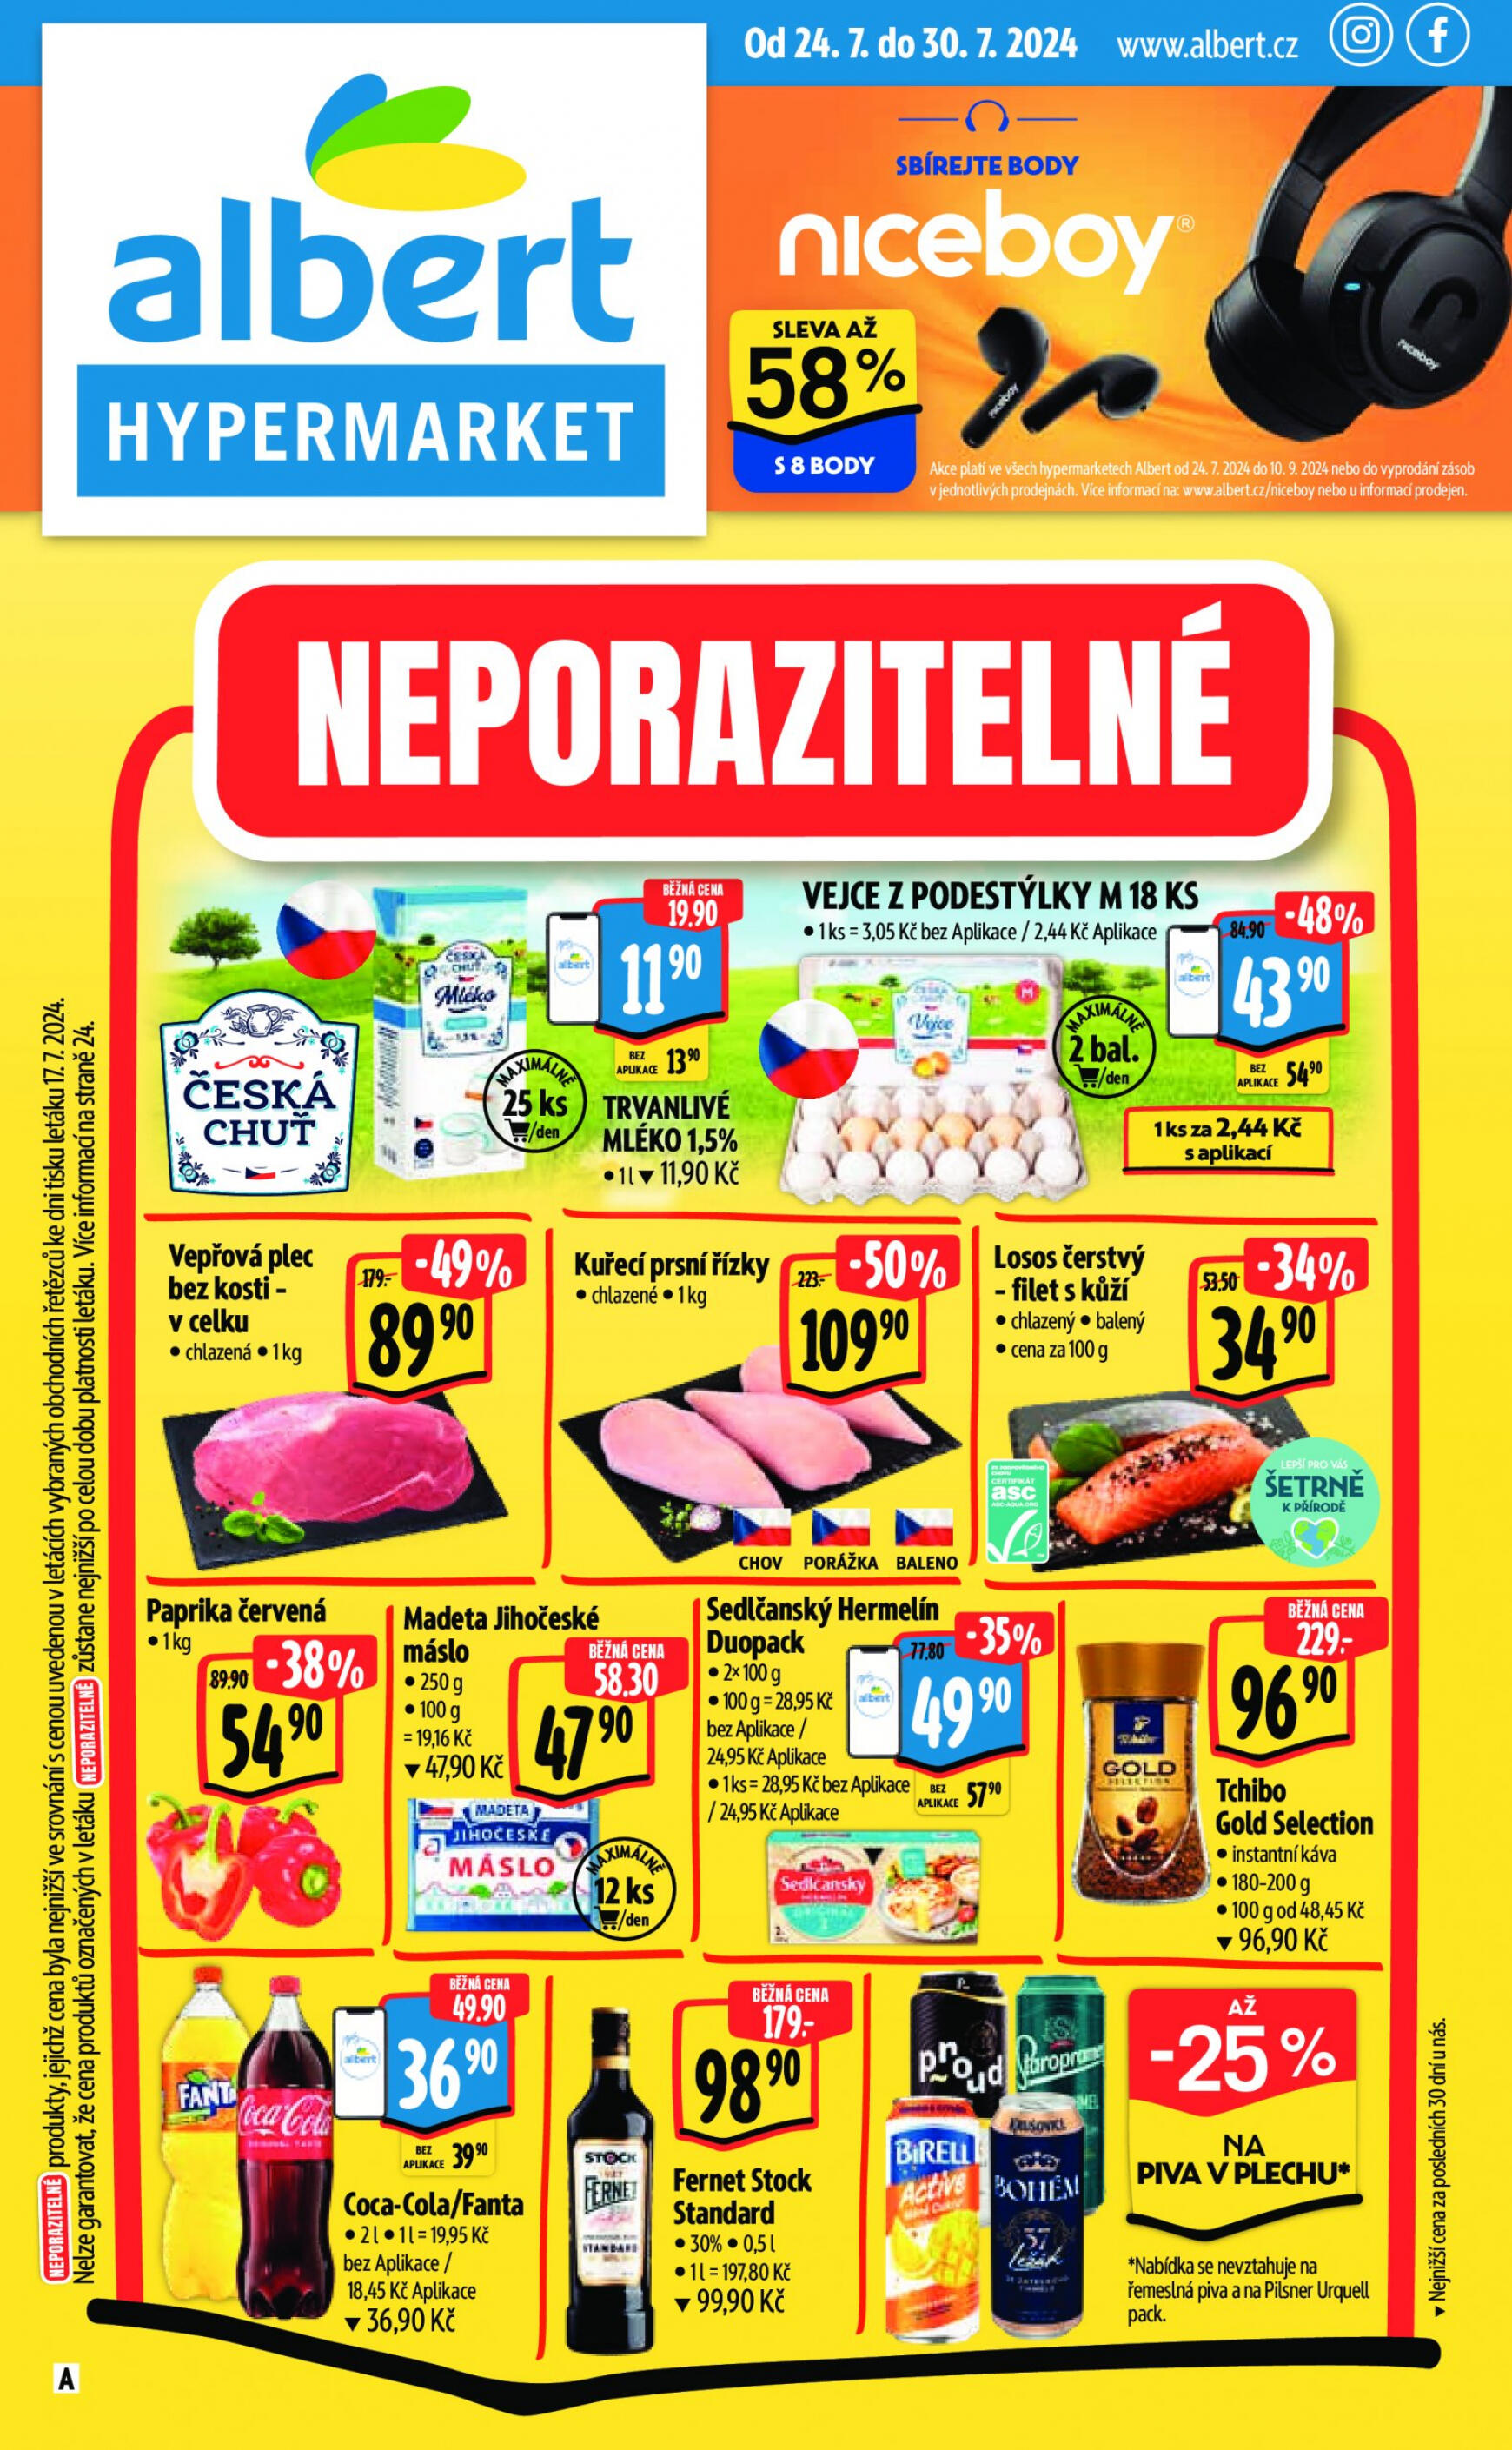 albert - Leták Albert Hypermarket od 24.07. do 30.07.